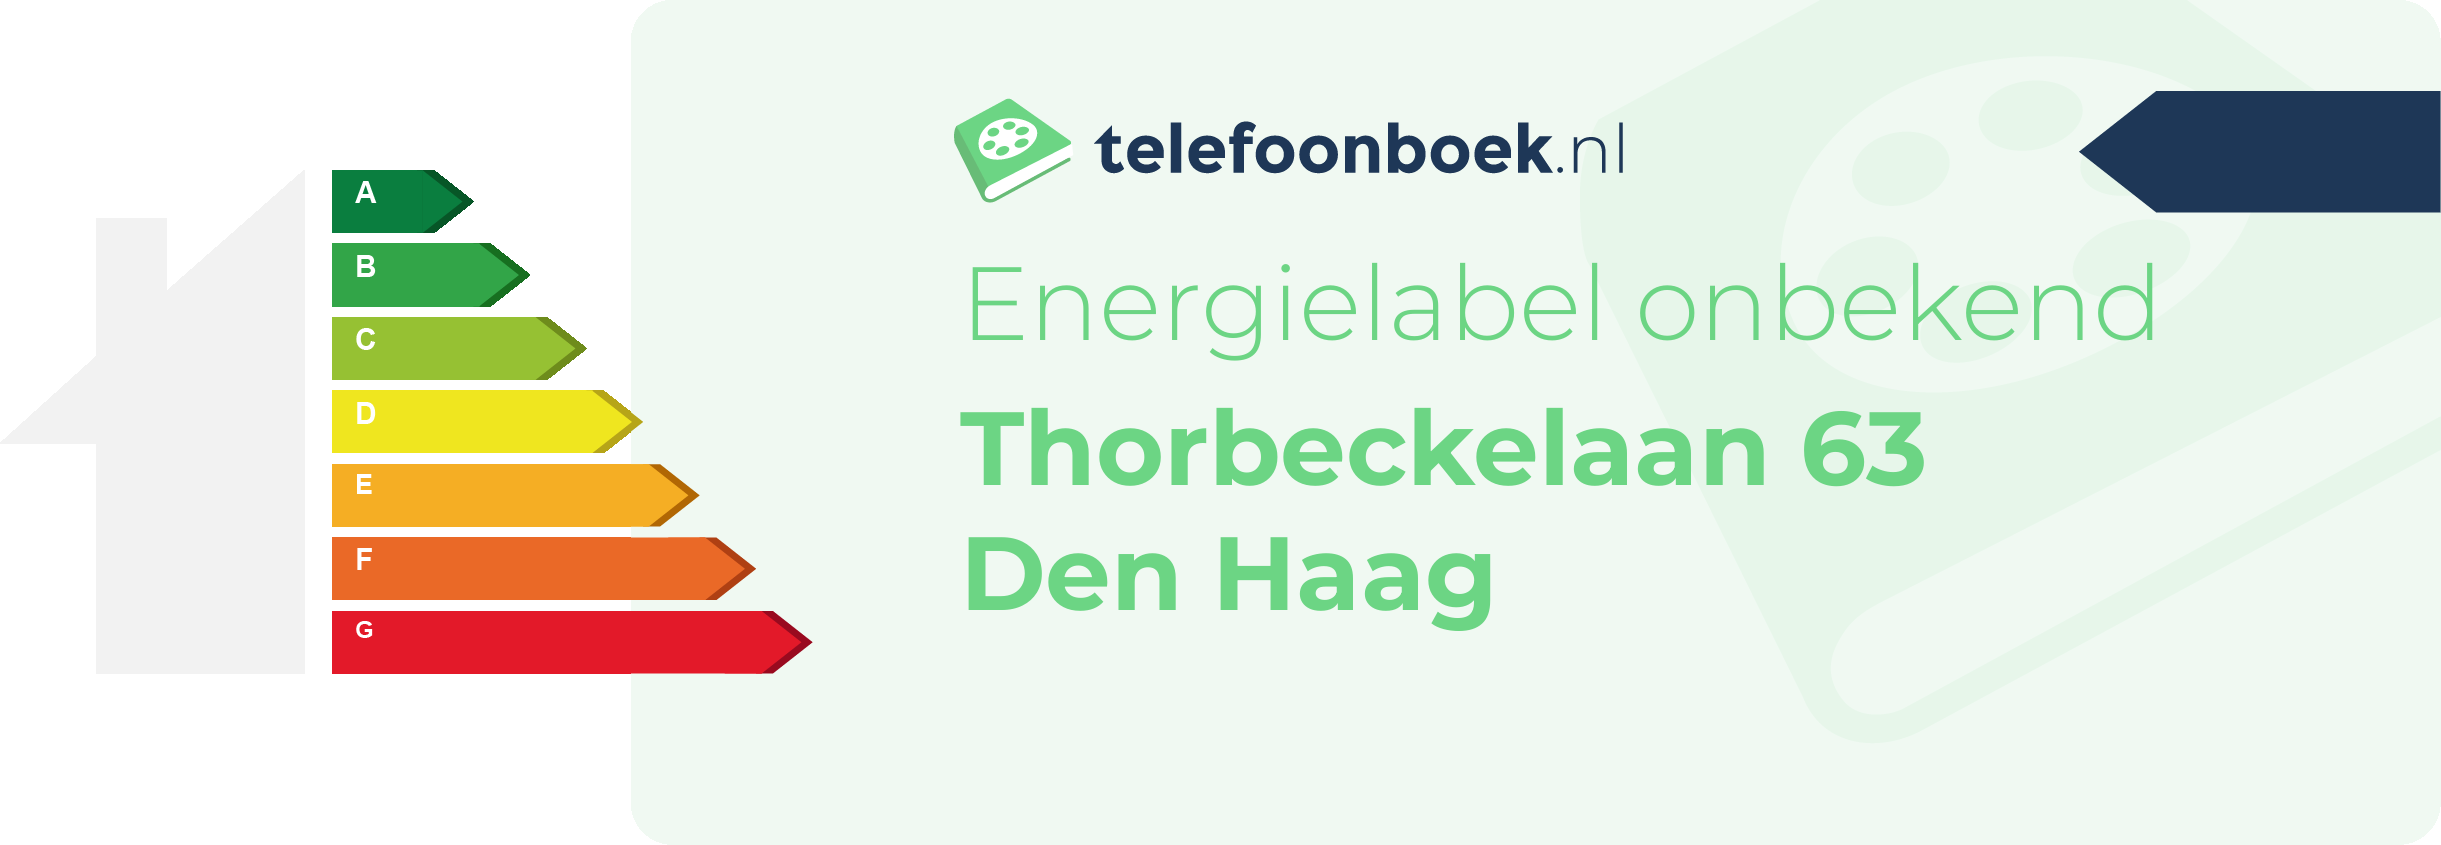 Energielabel Thorbeckelaan 63 Den Haag